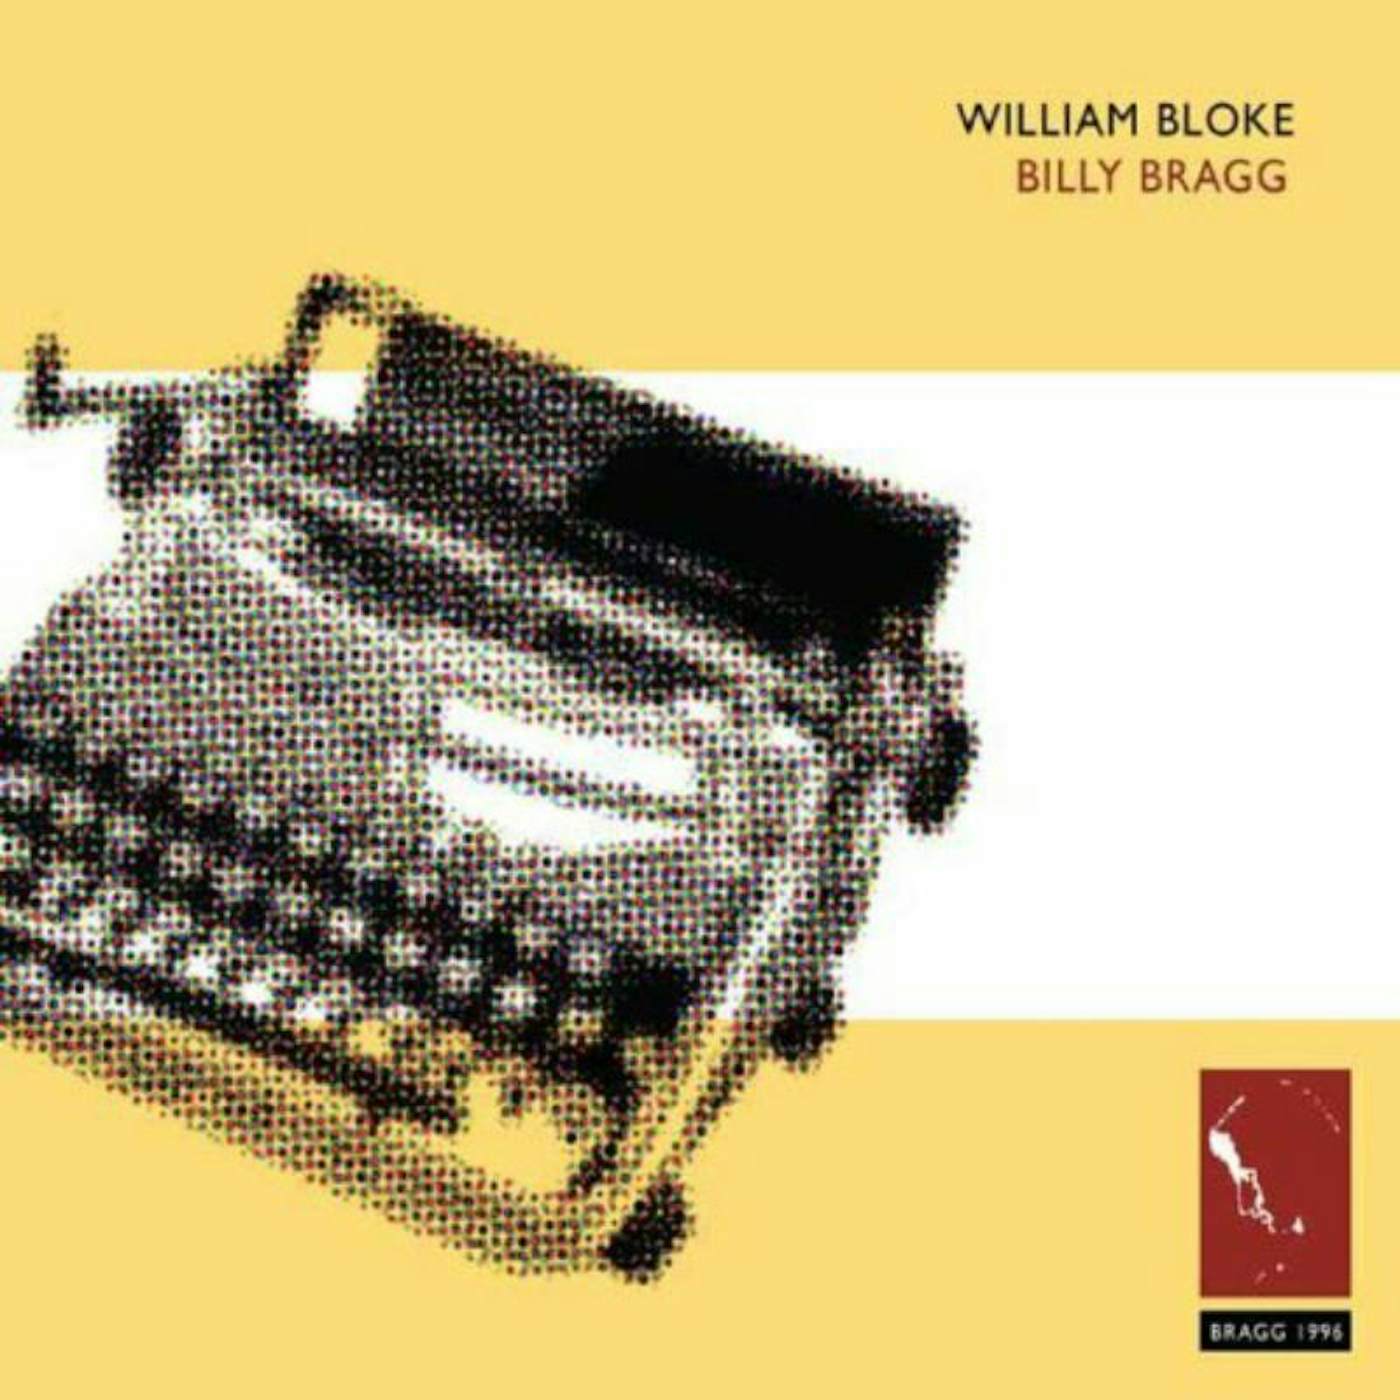 Billy Bragg CD - William Bloke